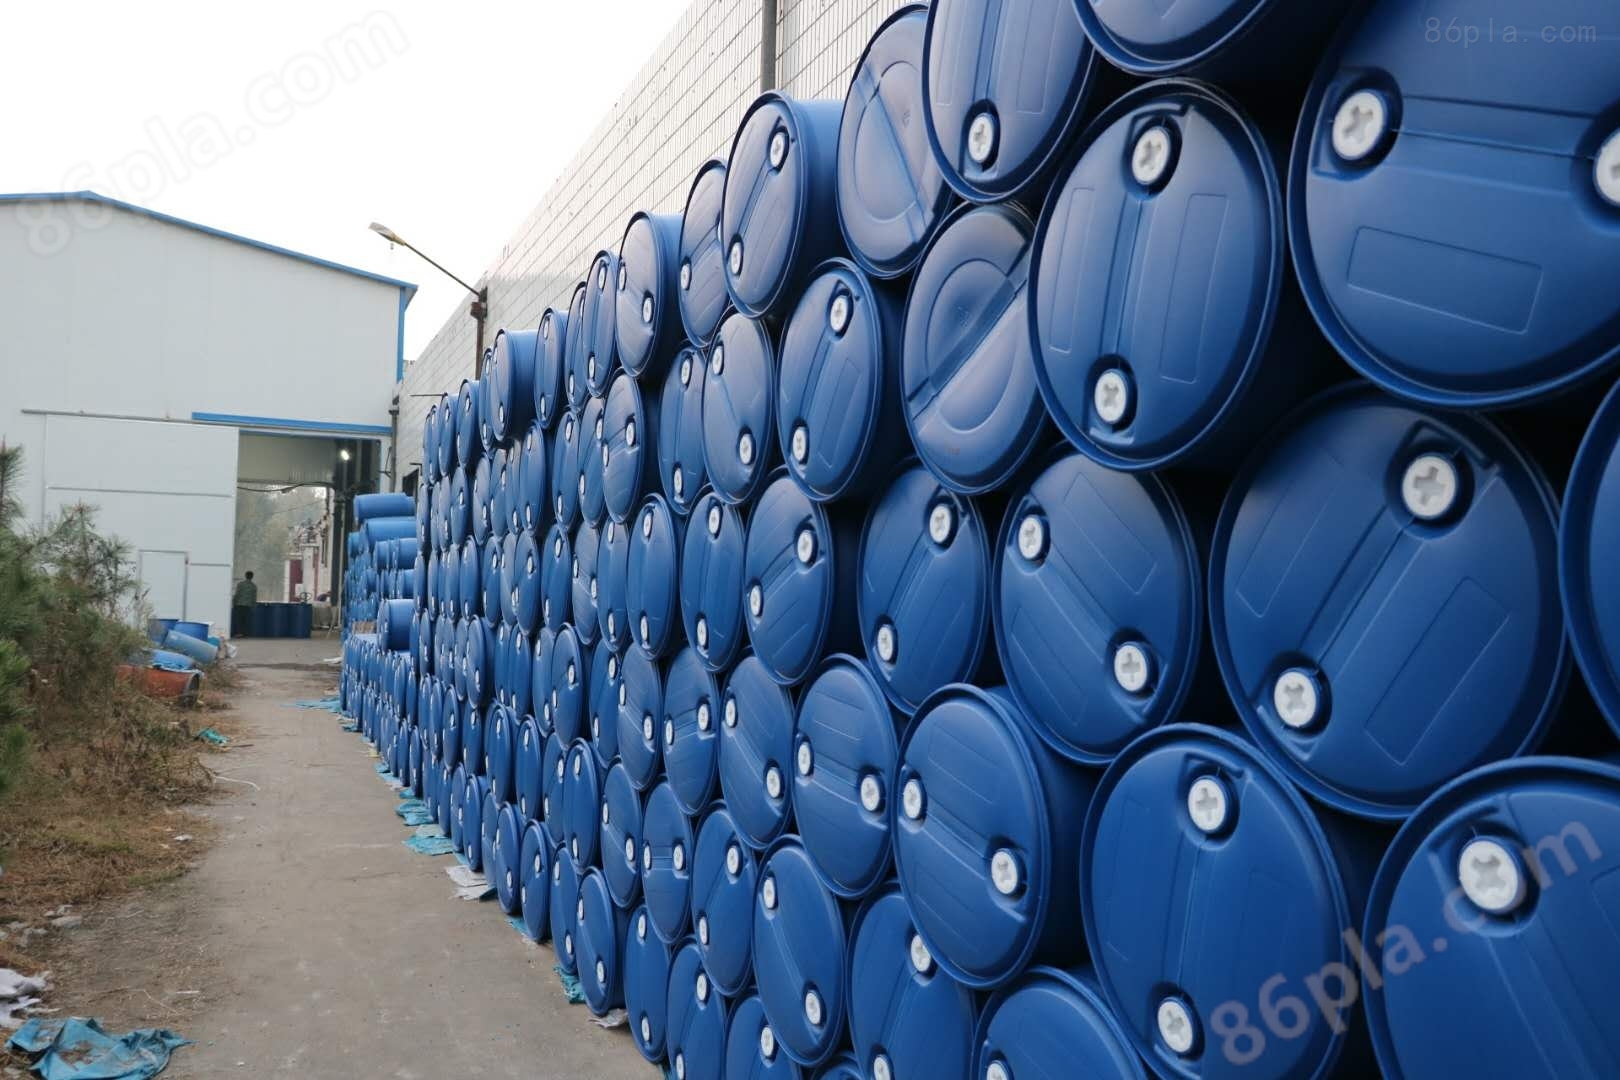 塑料桶果汁桶保质期长物流容器化工桶